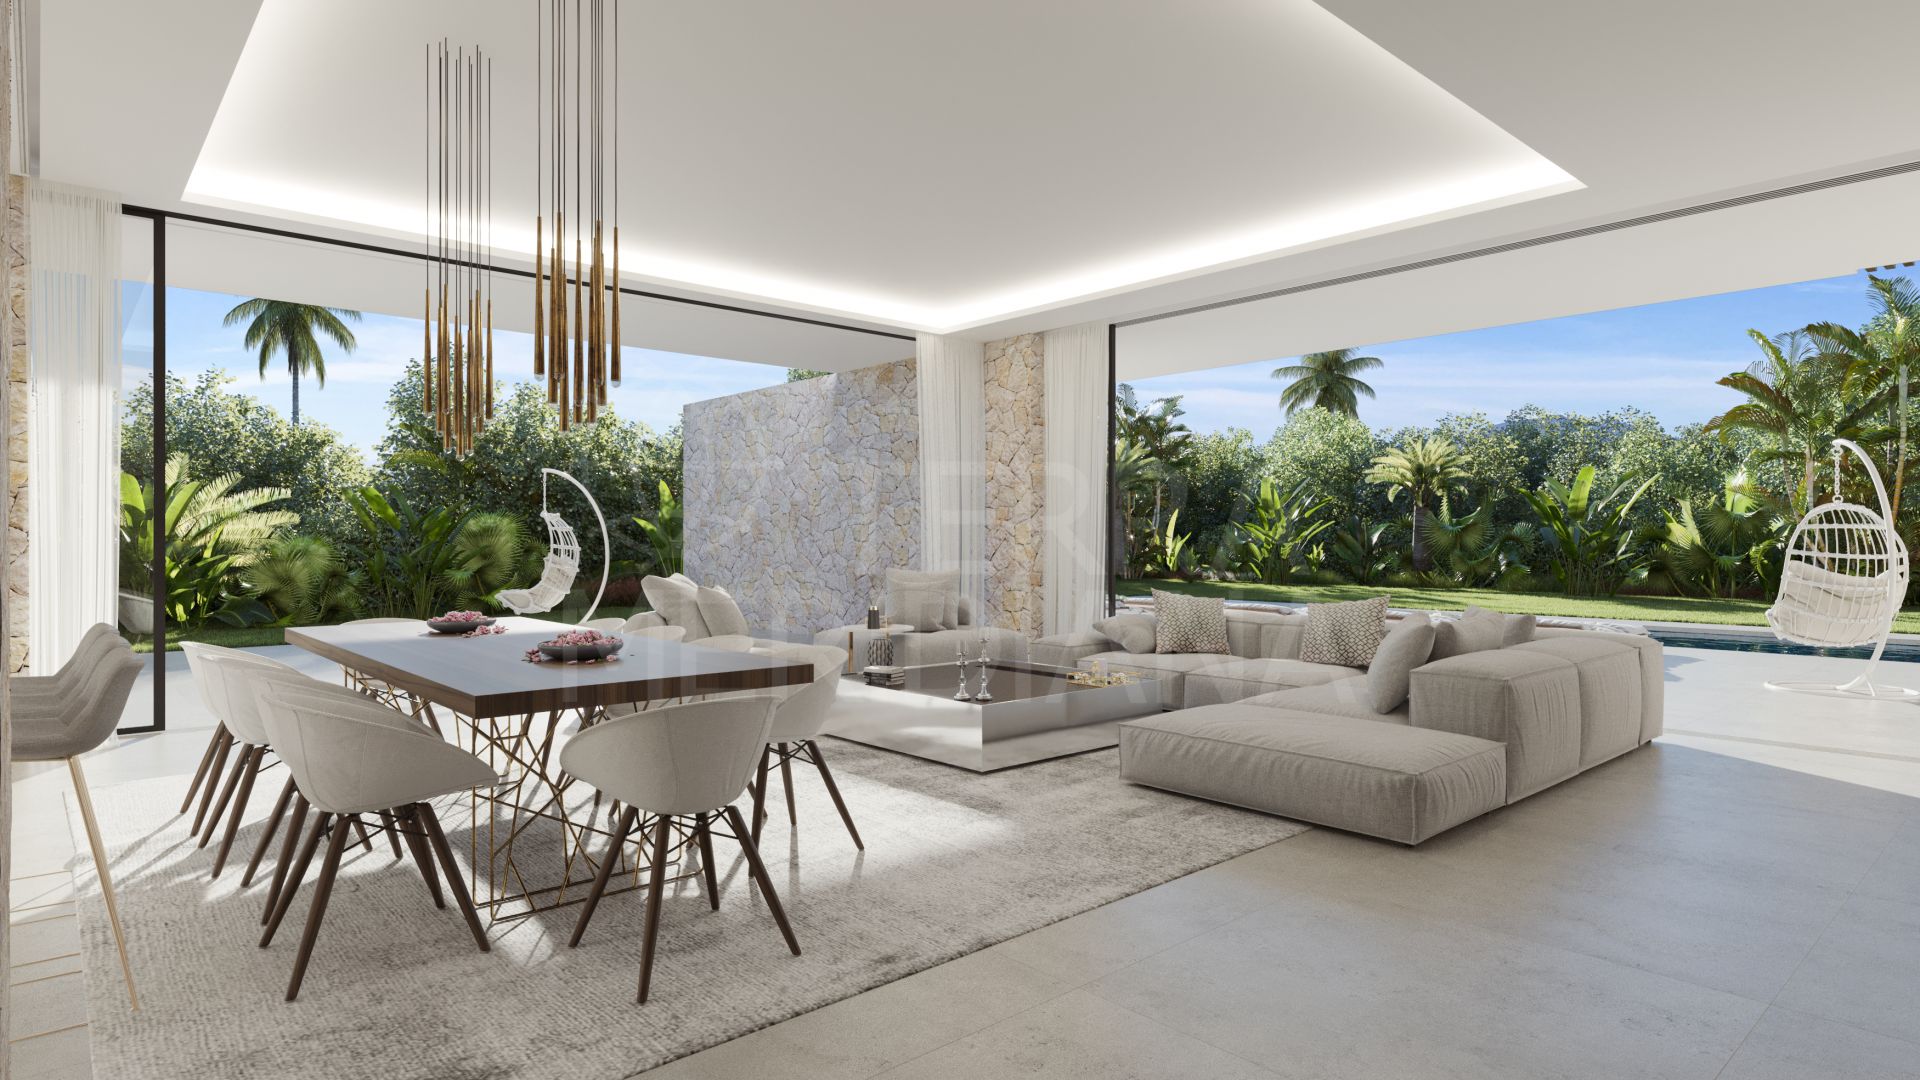 Villa moderna en construcción, con 5 dormitorios, piscina, jardín, muy cerca de la playa, en venta en Marbella